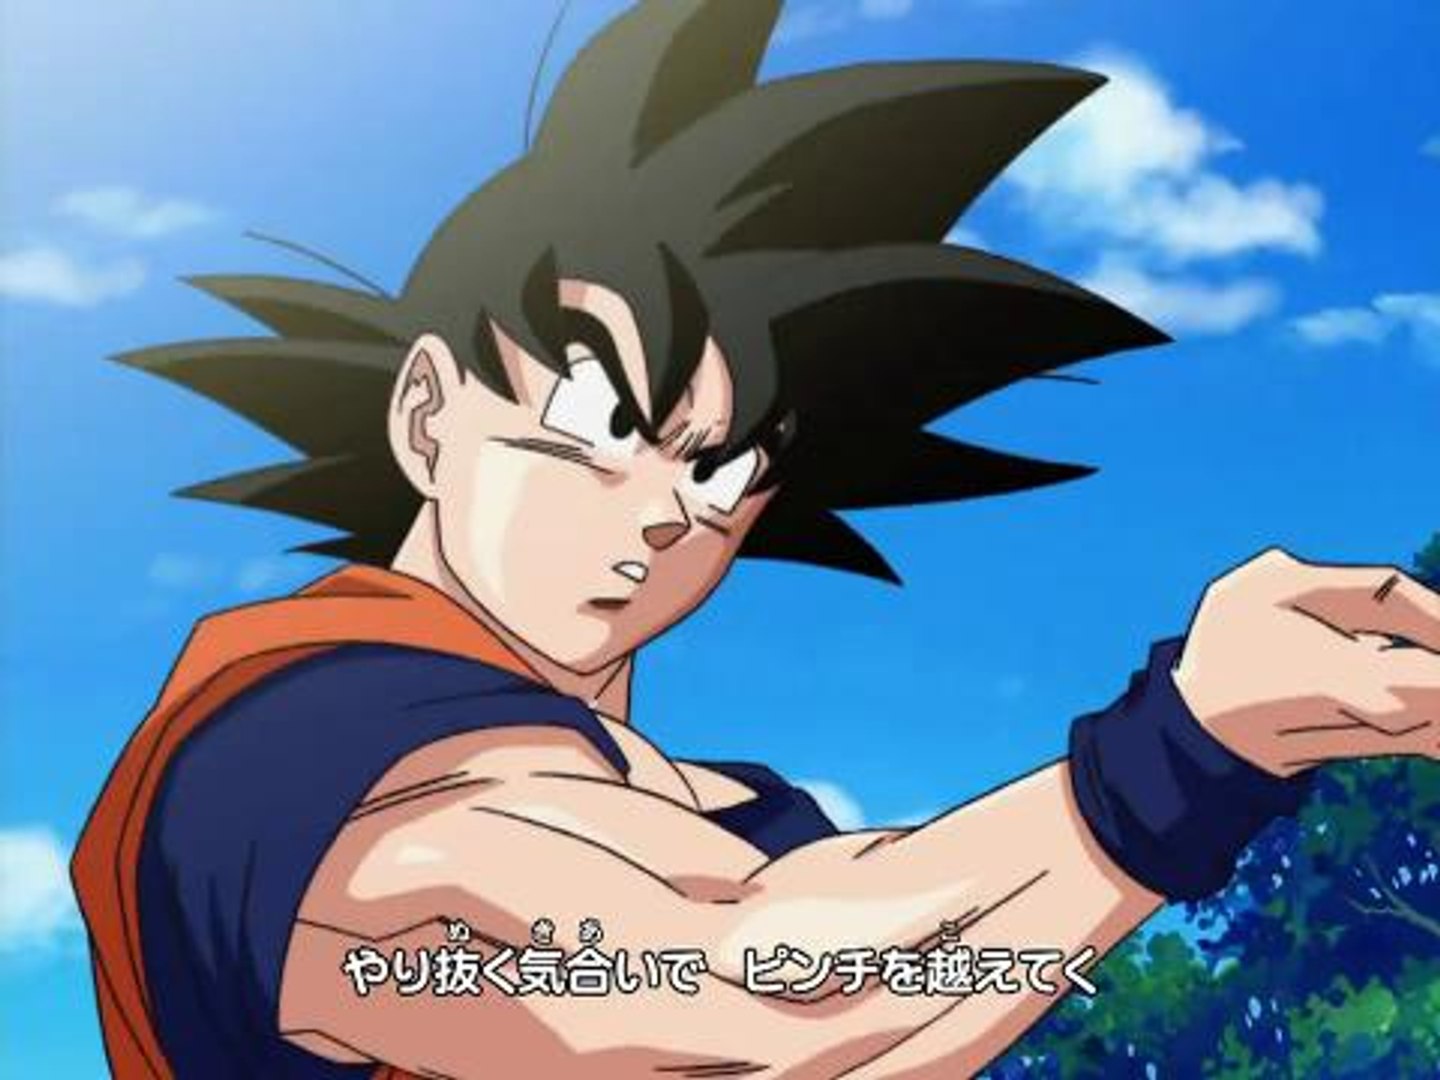 Dragon Ball Z Kai Season 1 Episodes 1-26 DVD Unboxing - video Dailymotion